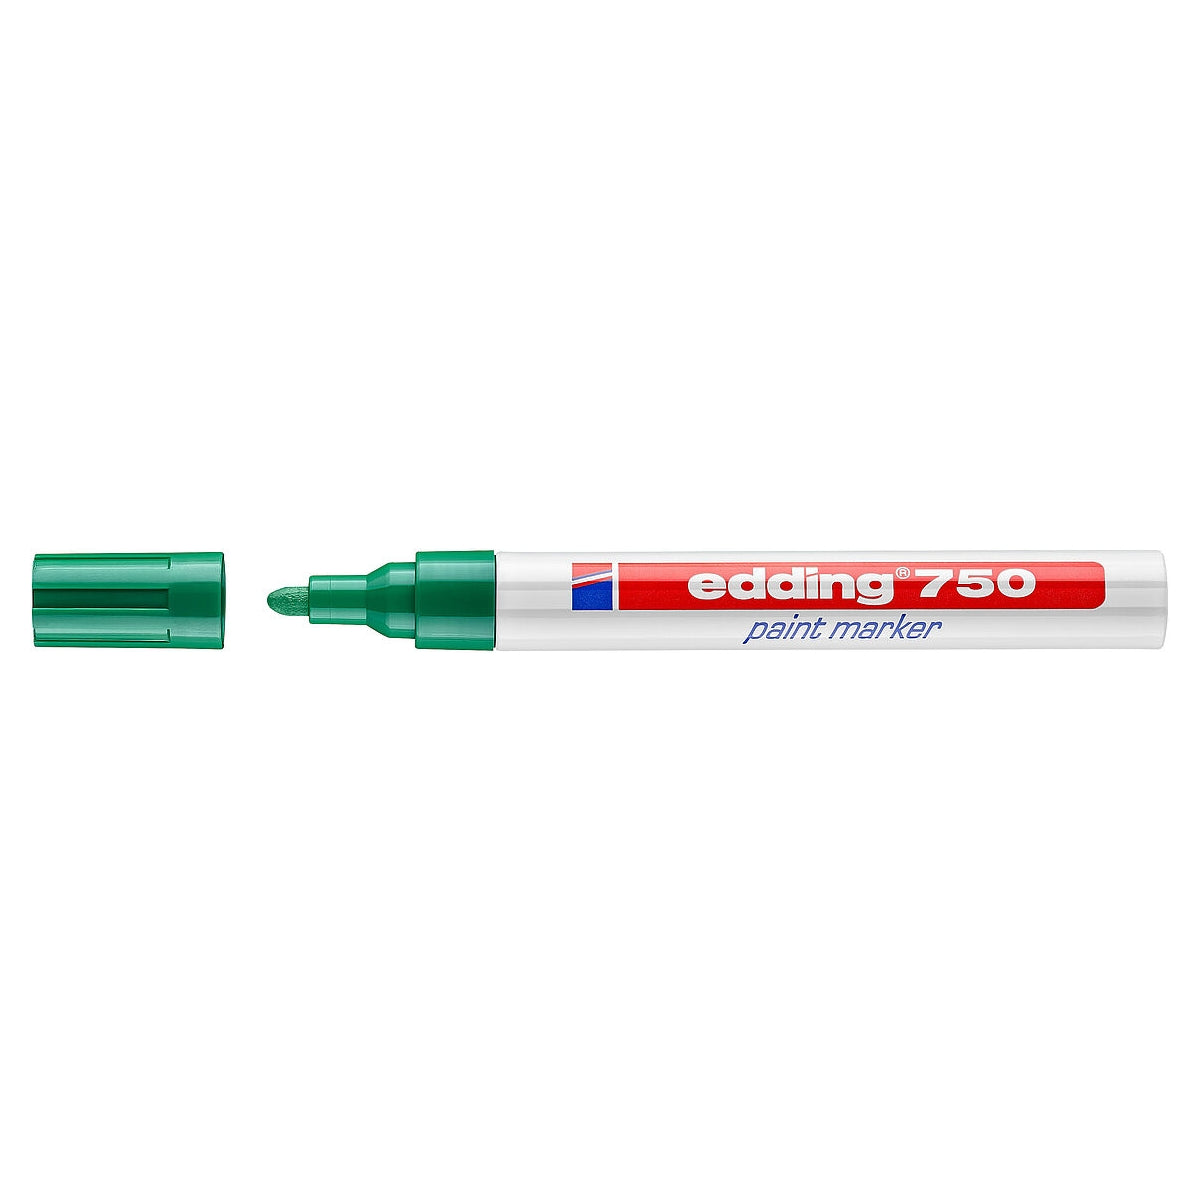 edding 750 Paint Marker, 2-4mm Bullet Tip, Green